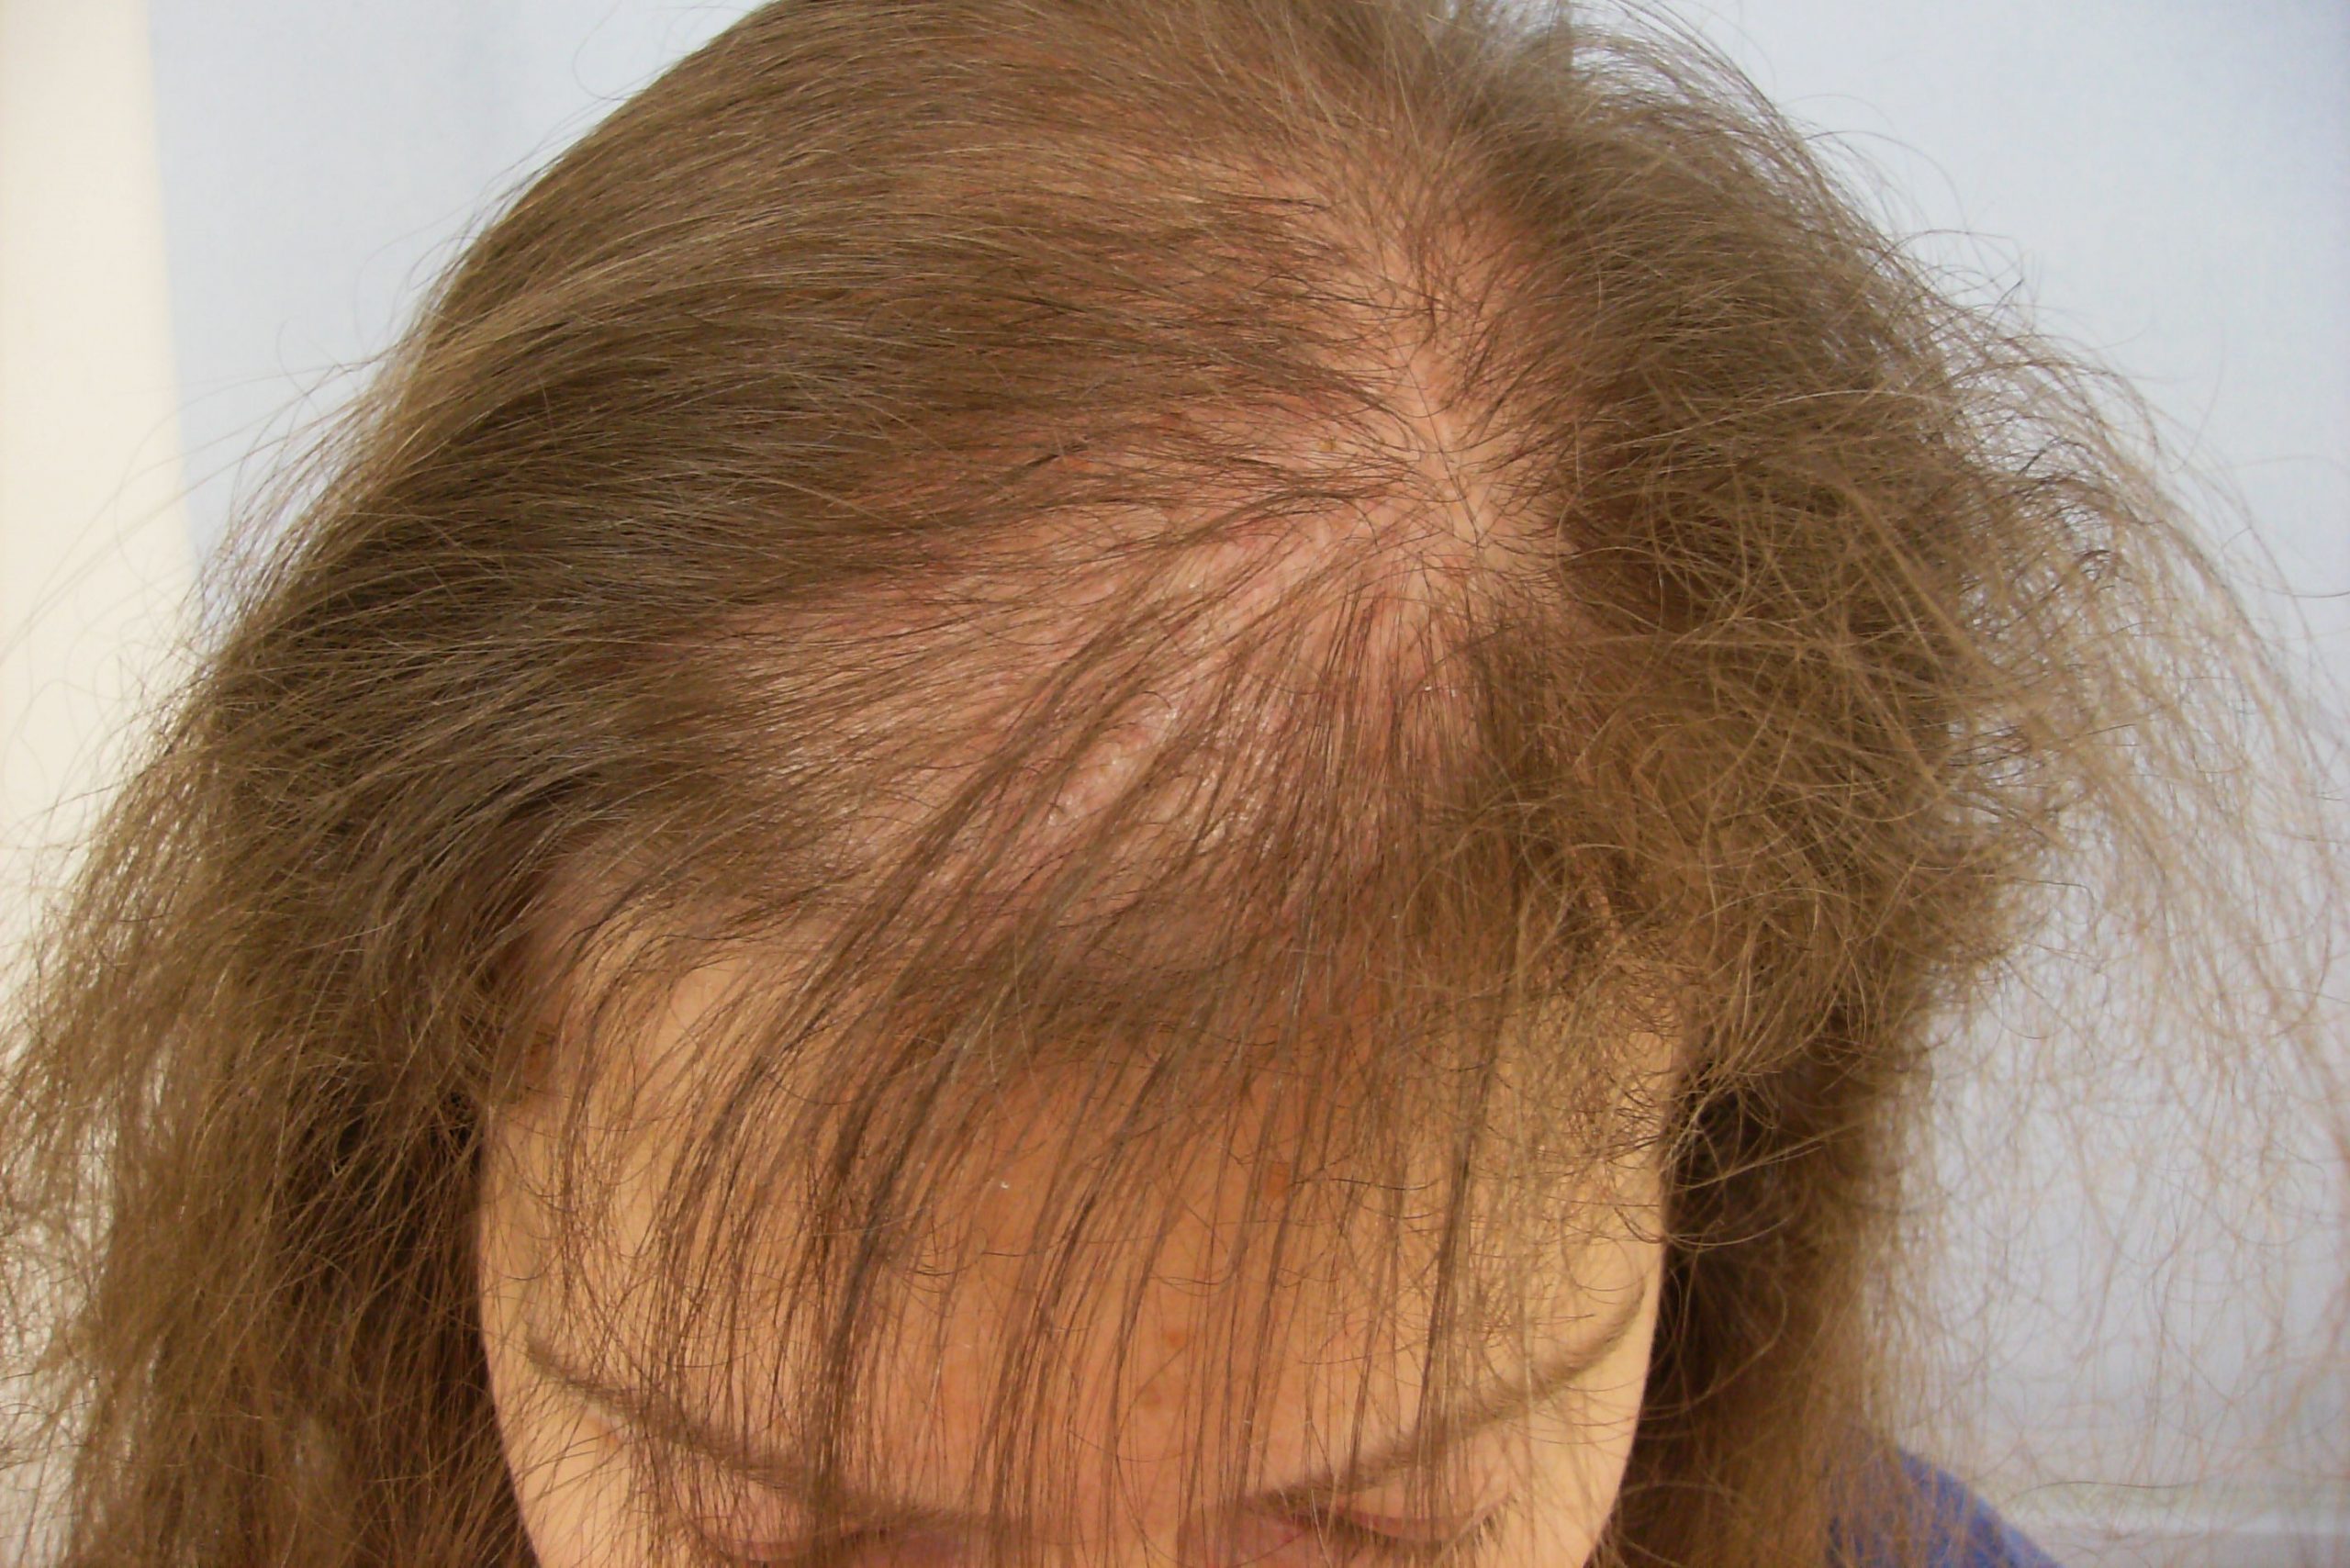 Alopecia androgenetica bij vrouwen: Een veelvoorkomende vorm van haaruitval